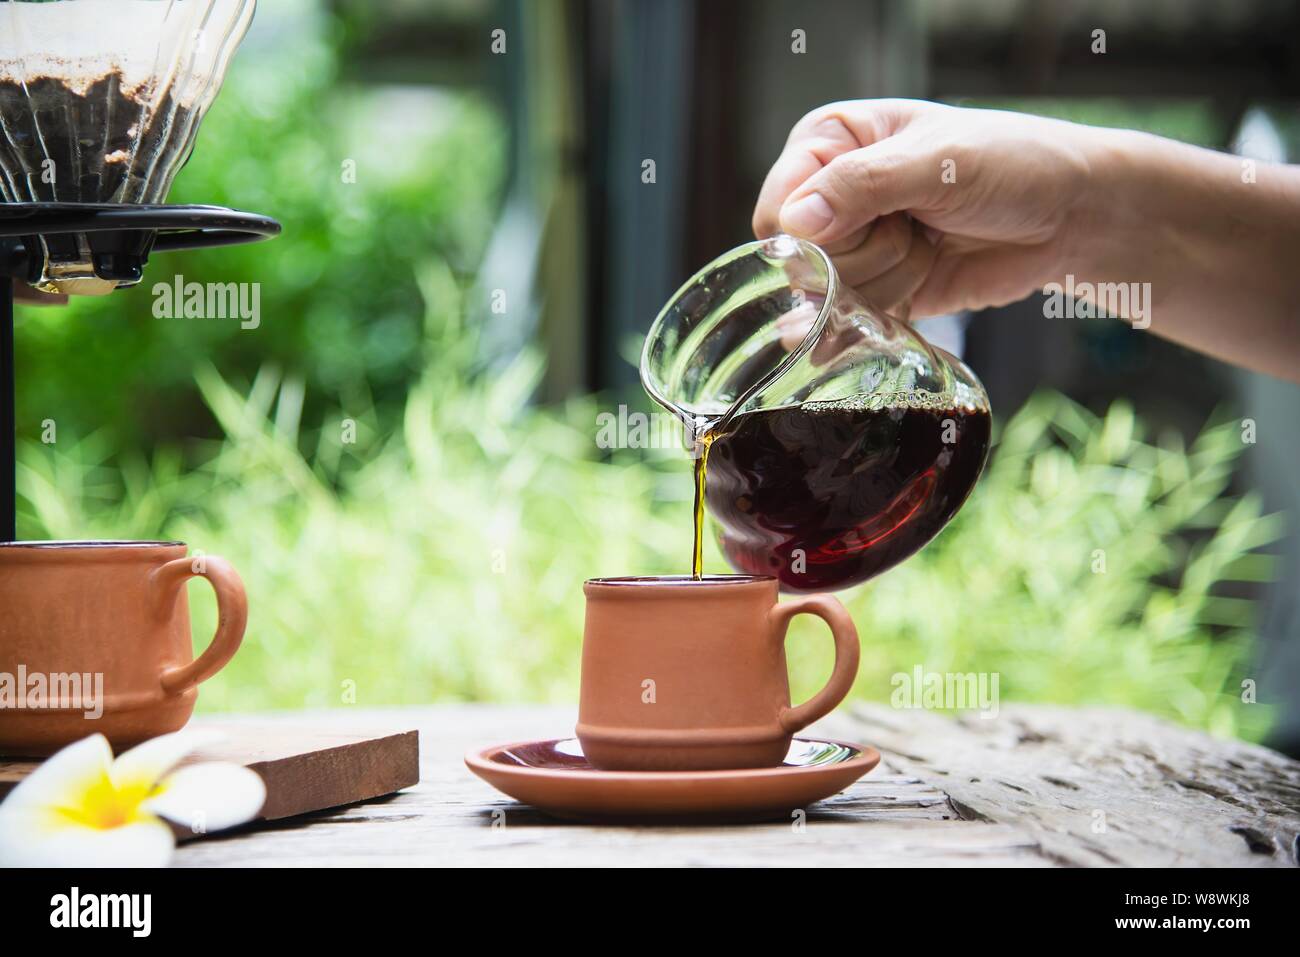 Mann, der Tropfen frischen Kaffee in vintage Coffee Shop mit grünen Natur  Hintergrund - Menschen mit frischen Kaffee in der Natur Konzept  Stockfotografie - Alamy